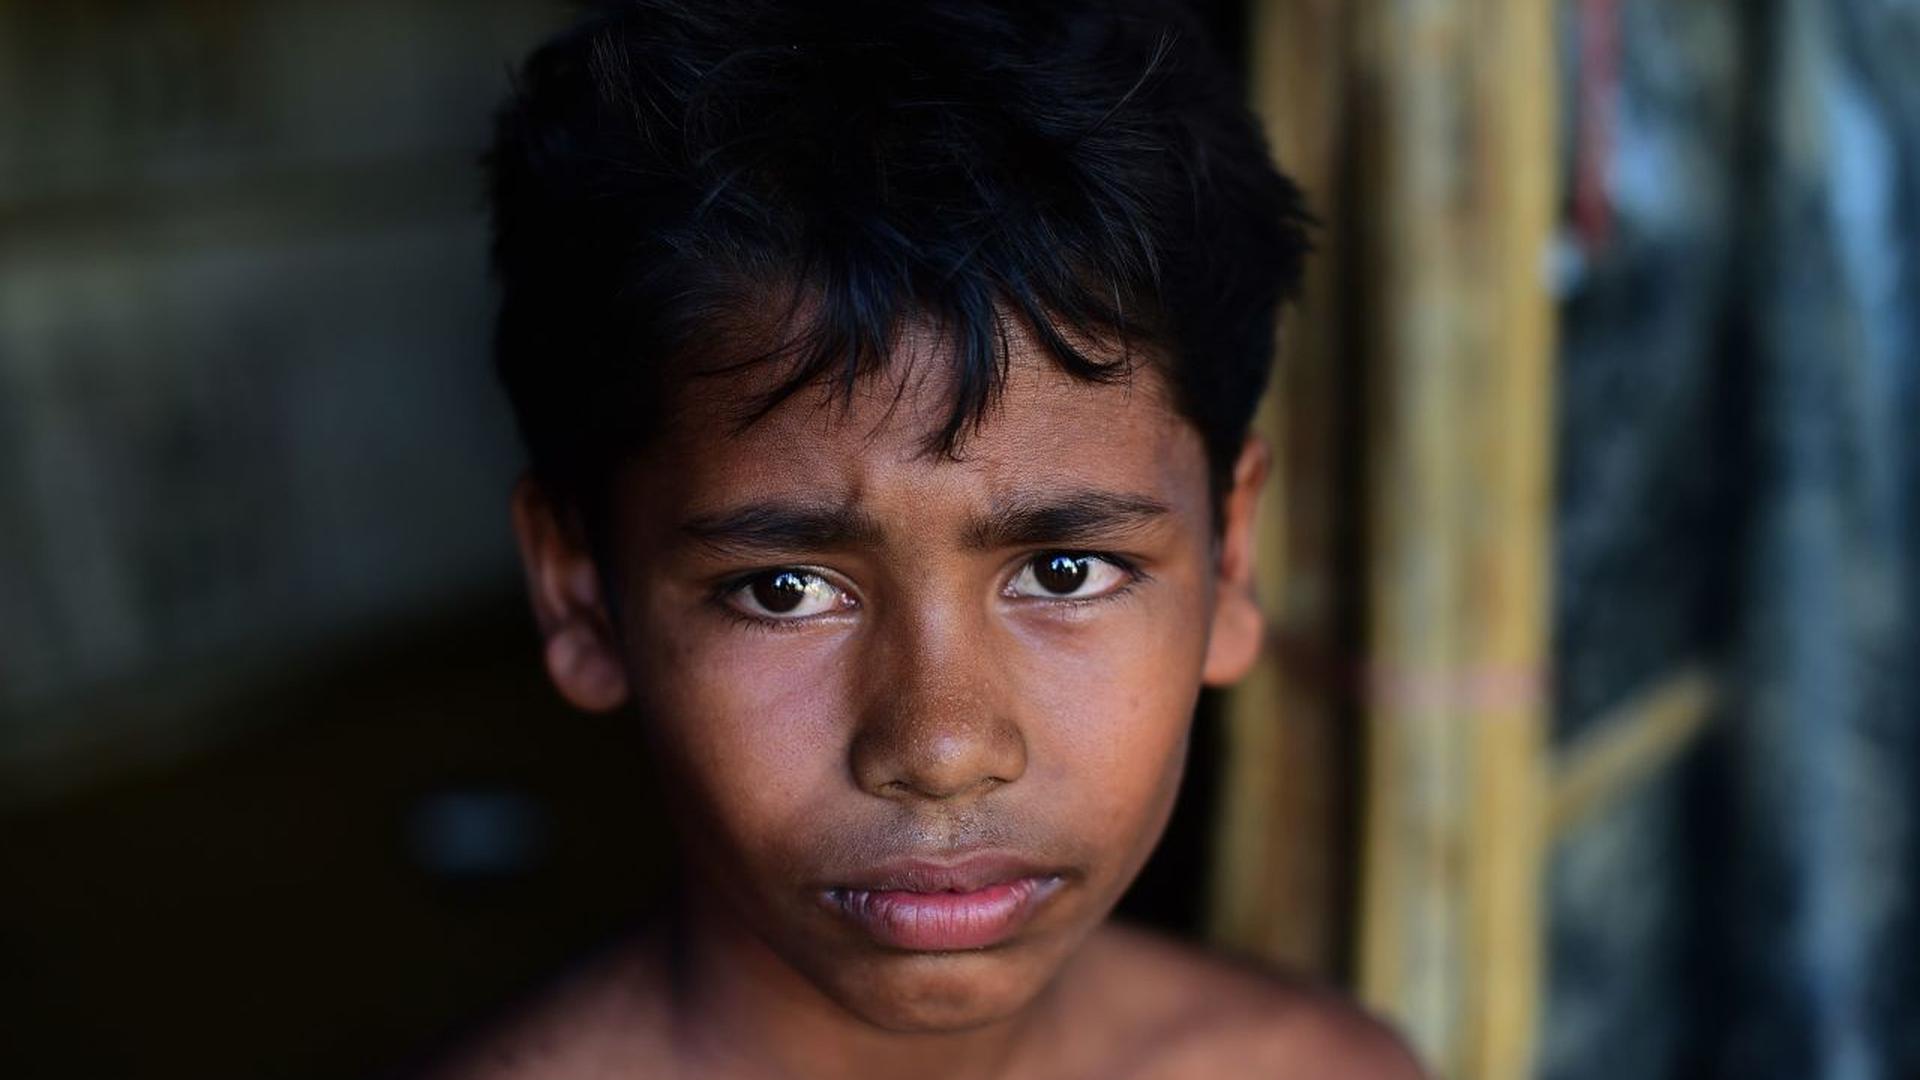 Un camp de réfugiés Rohingya au Bangladesh le 25 octobre